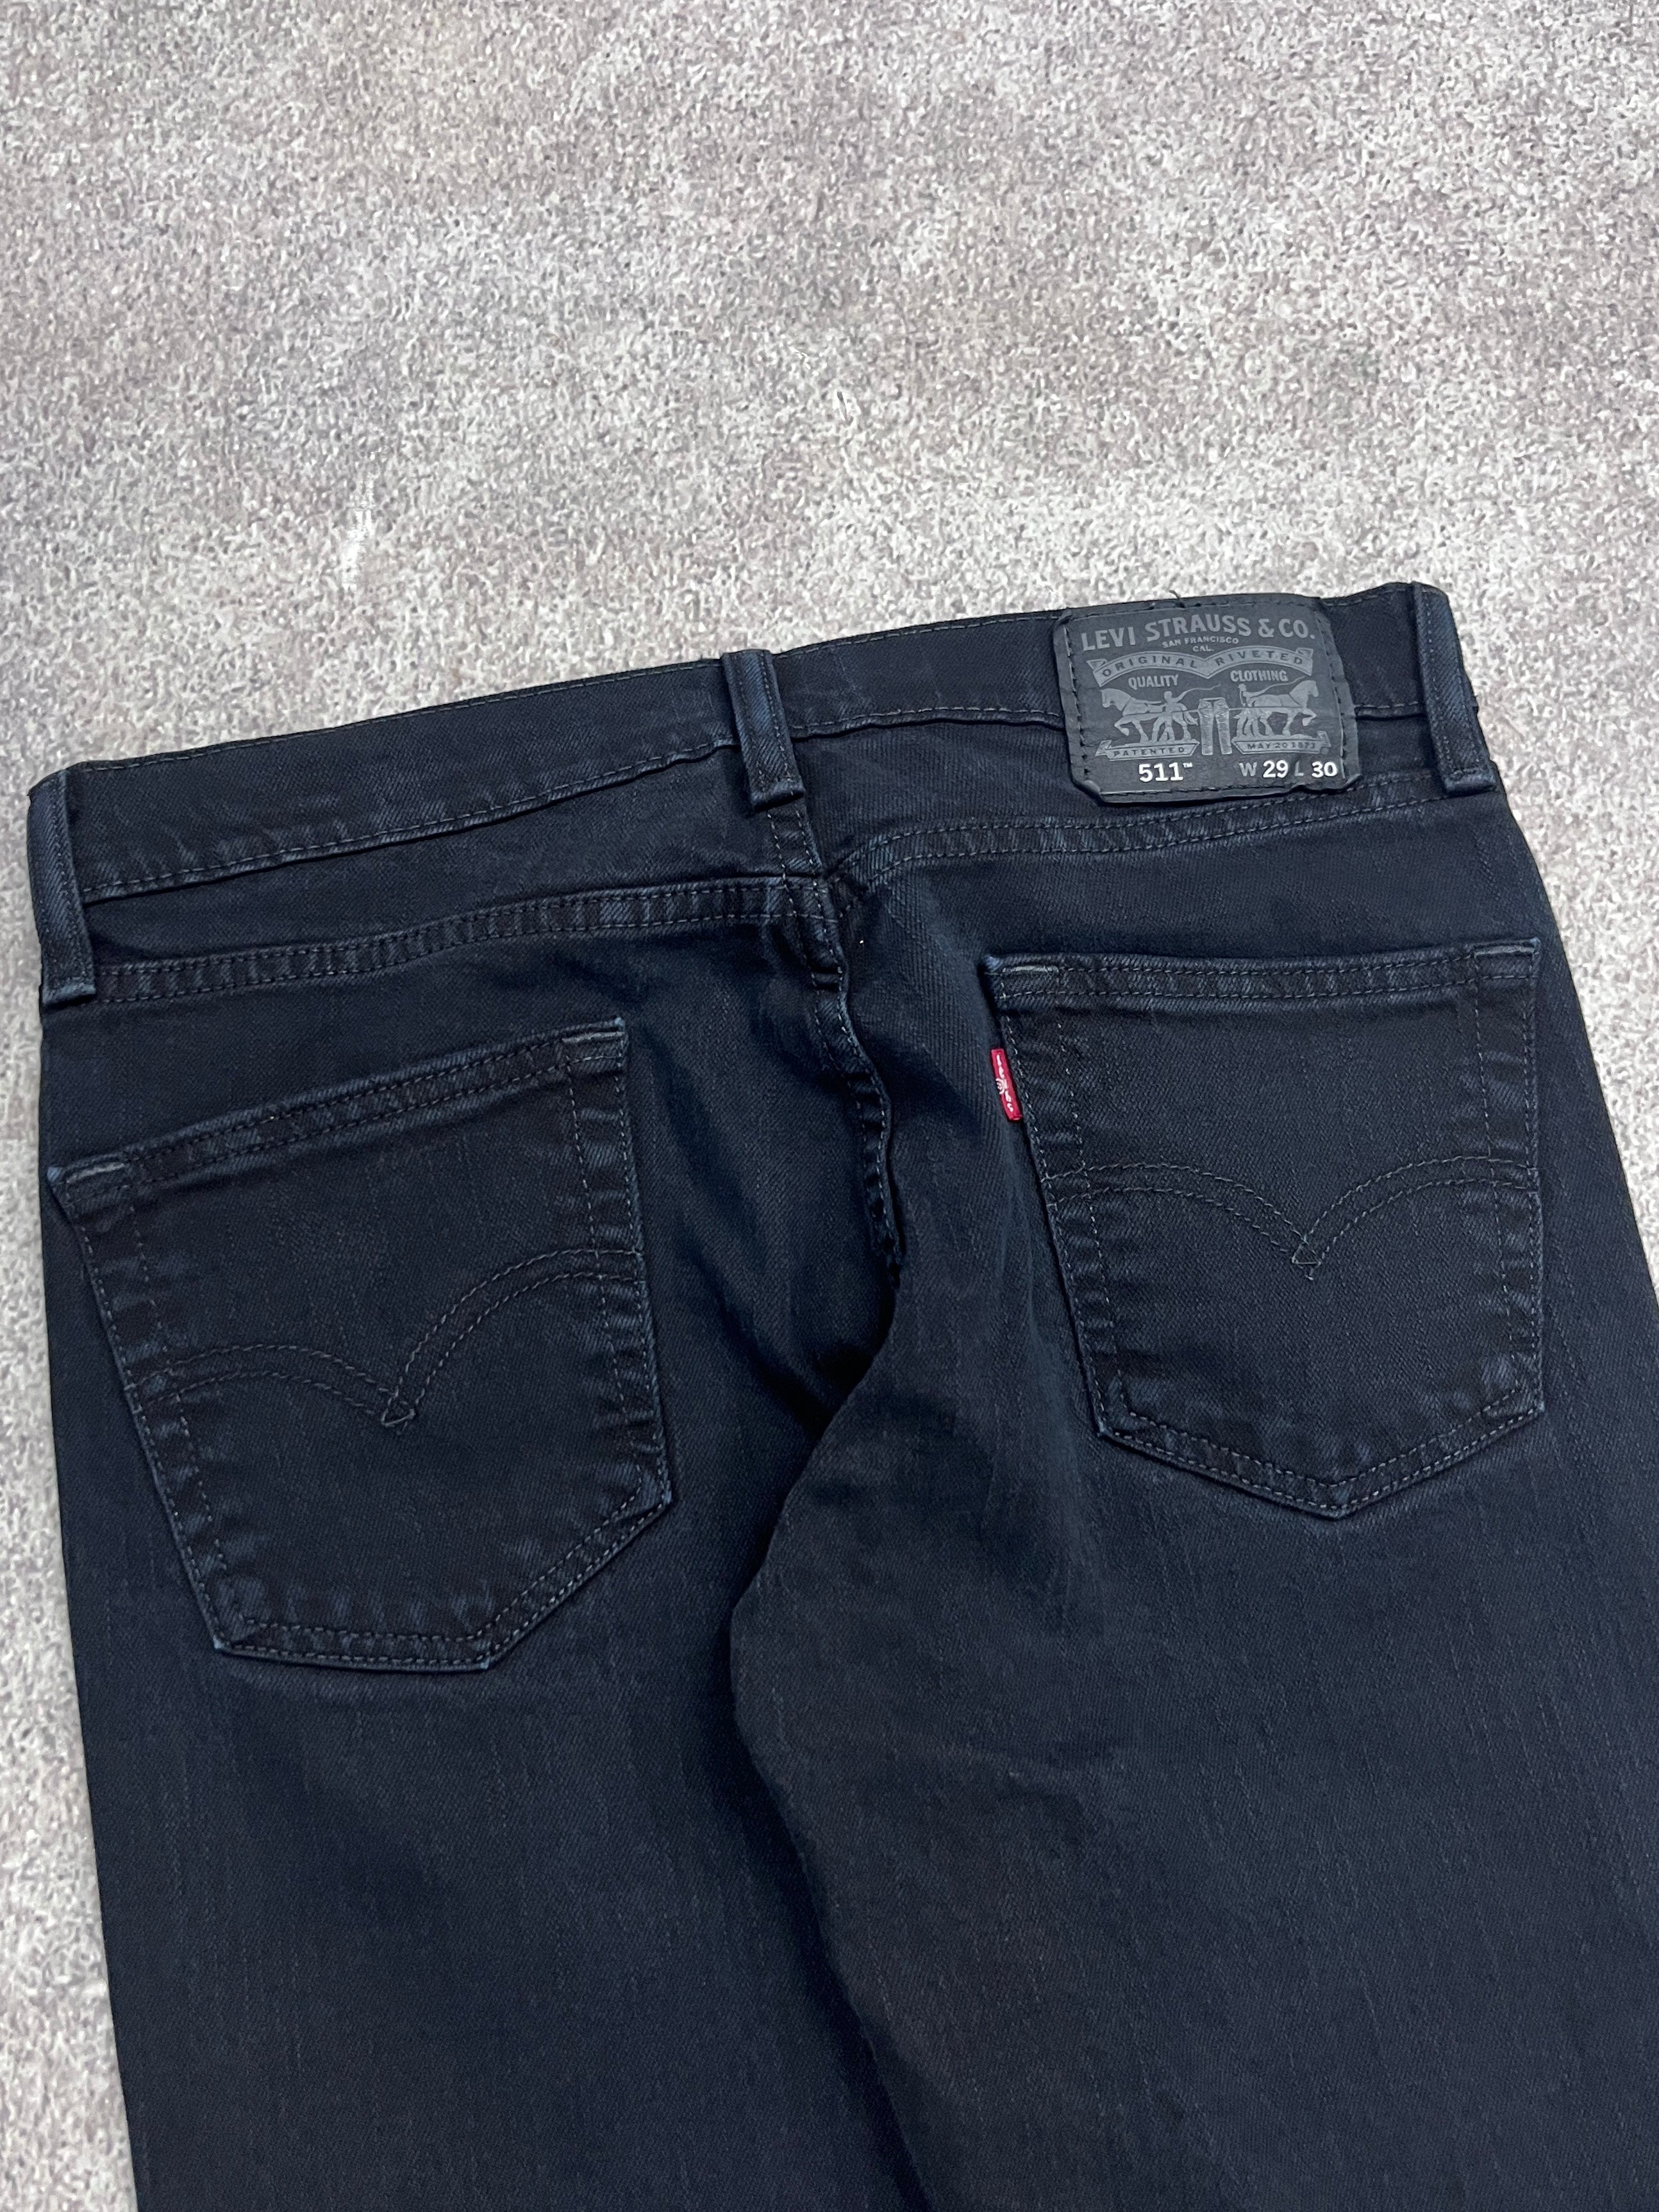 Vintage Levi 511 Denim Jeans // W29 L30 - RHAGHOUSE VINTAGE